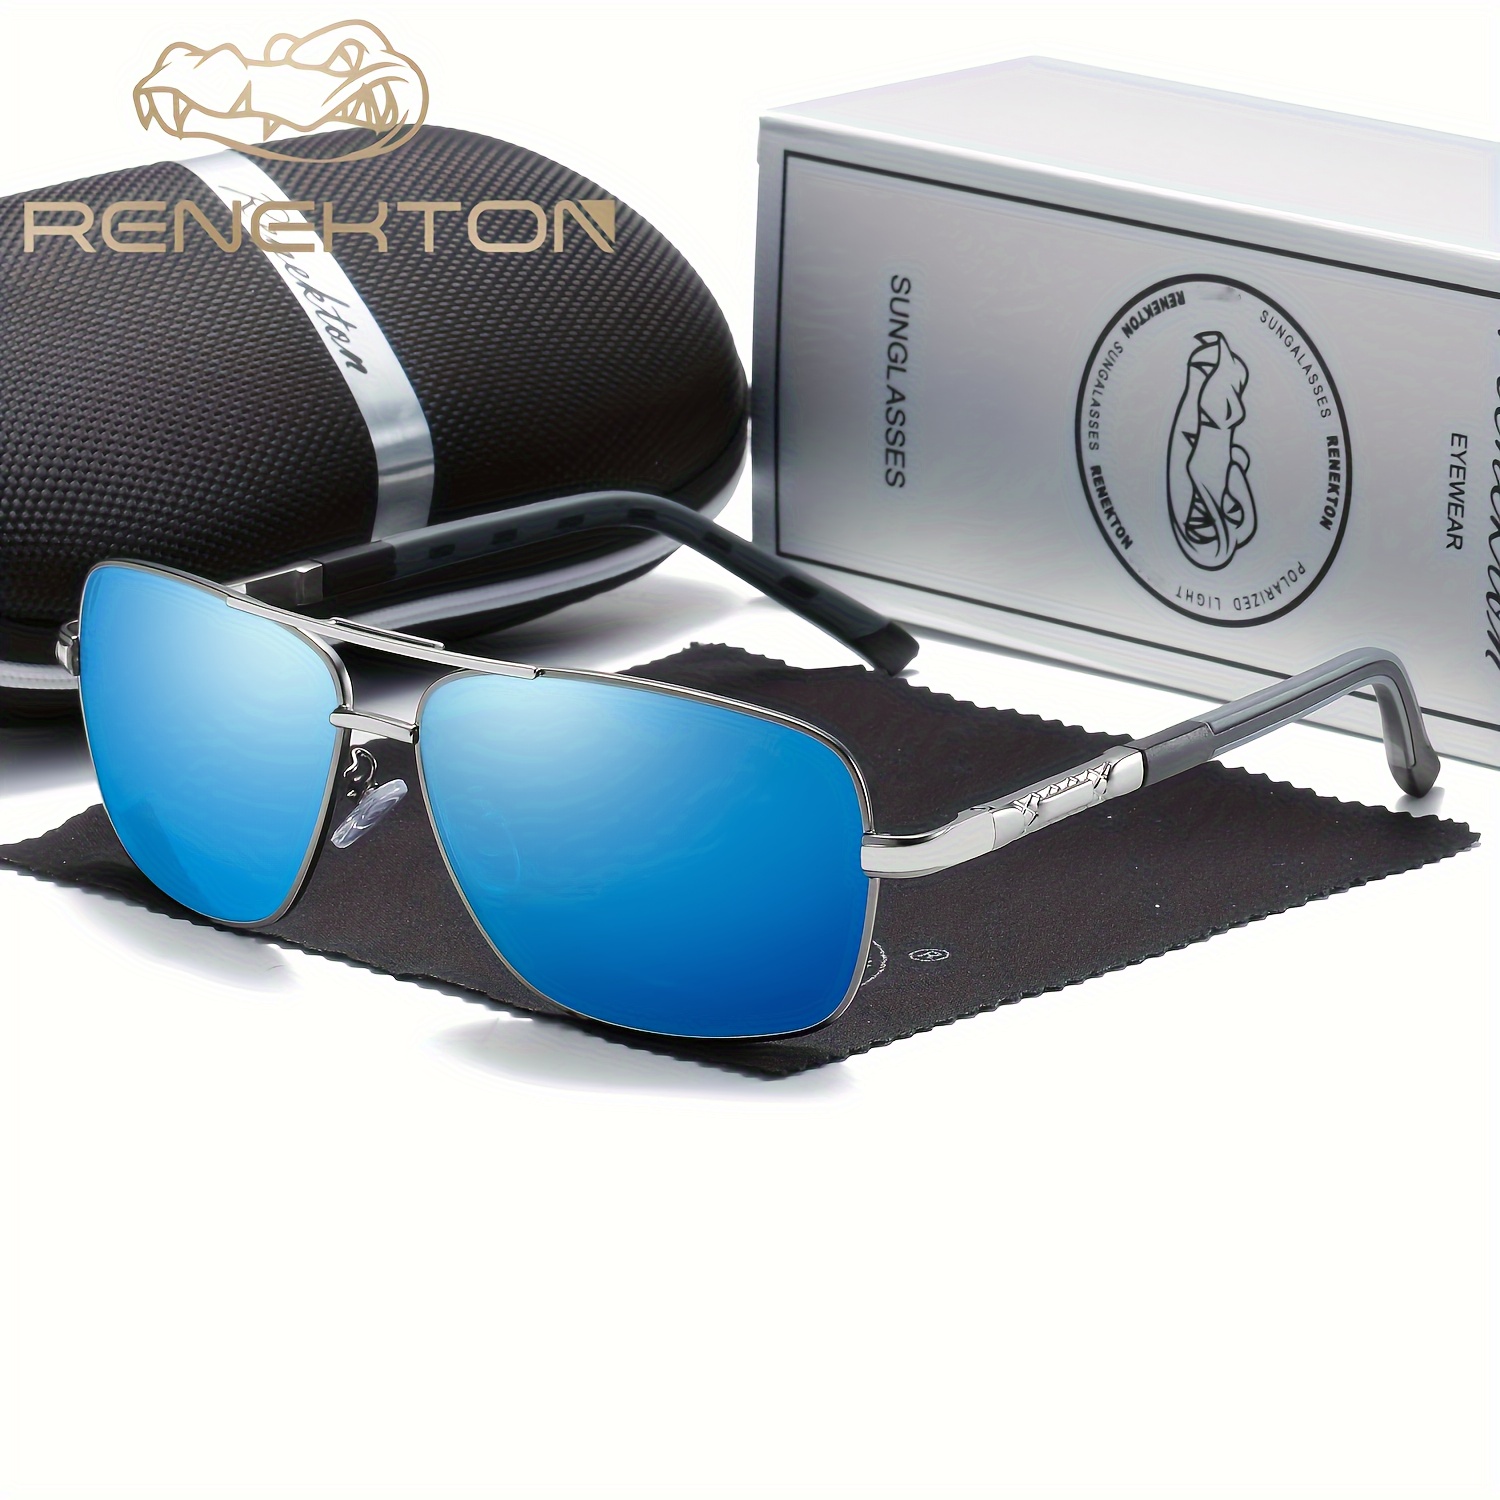 1pc RENEKTON New Glasses Men's Polarized Sunglasses Color Film Square Polarized Glasses Sunglasses Driving Glasses 8724